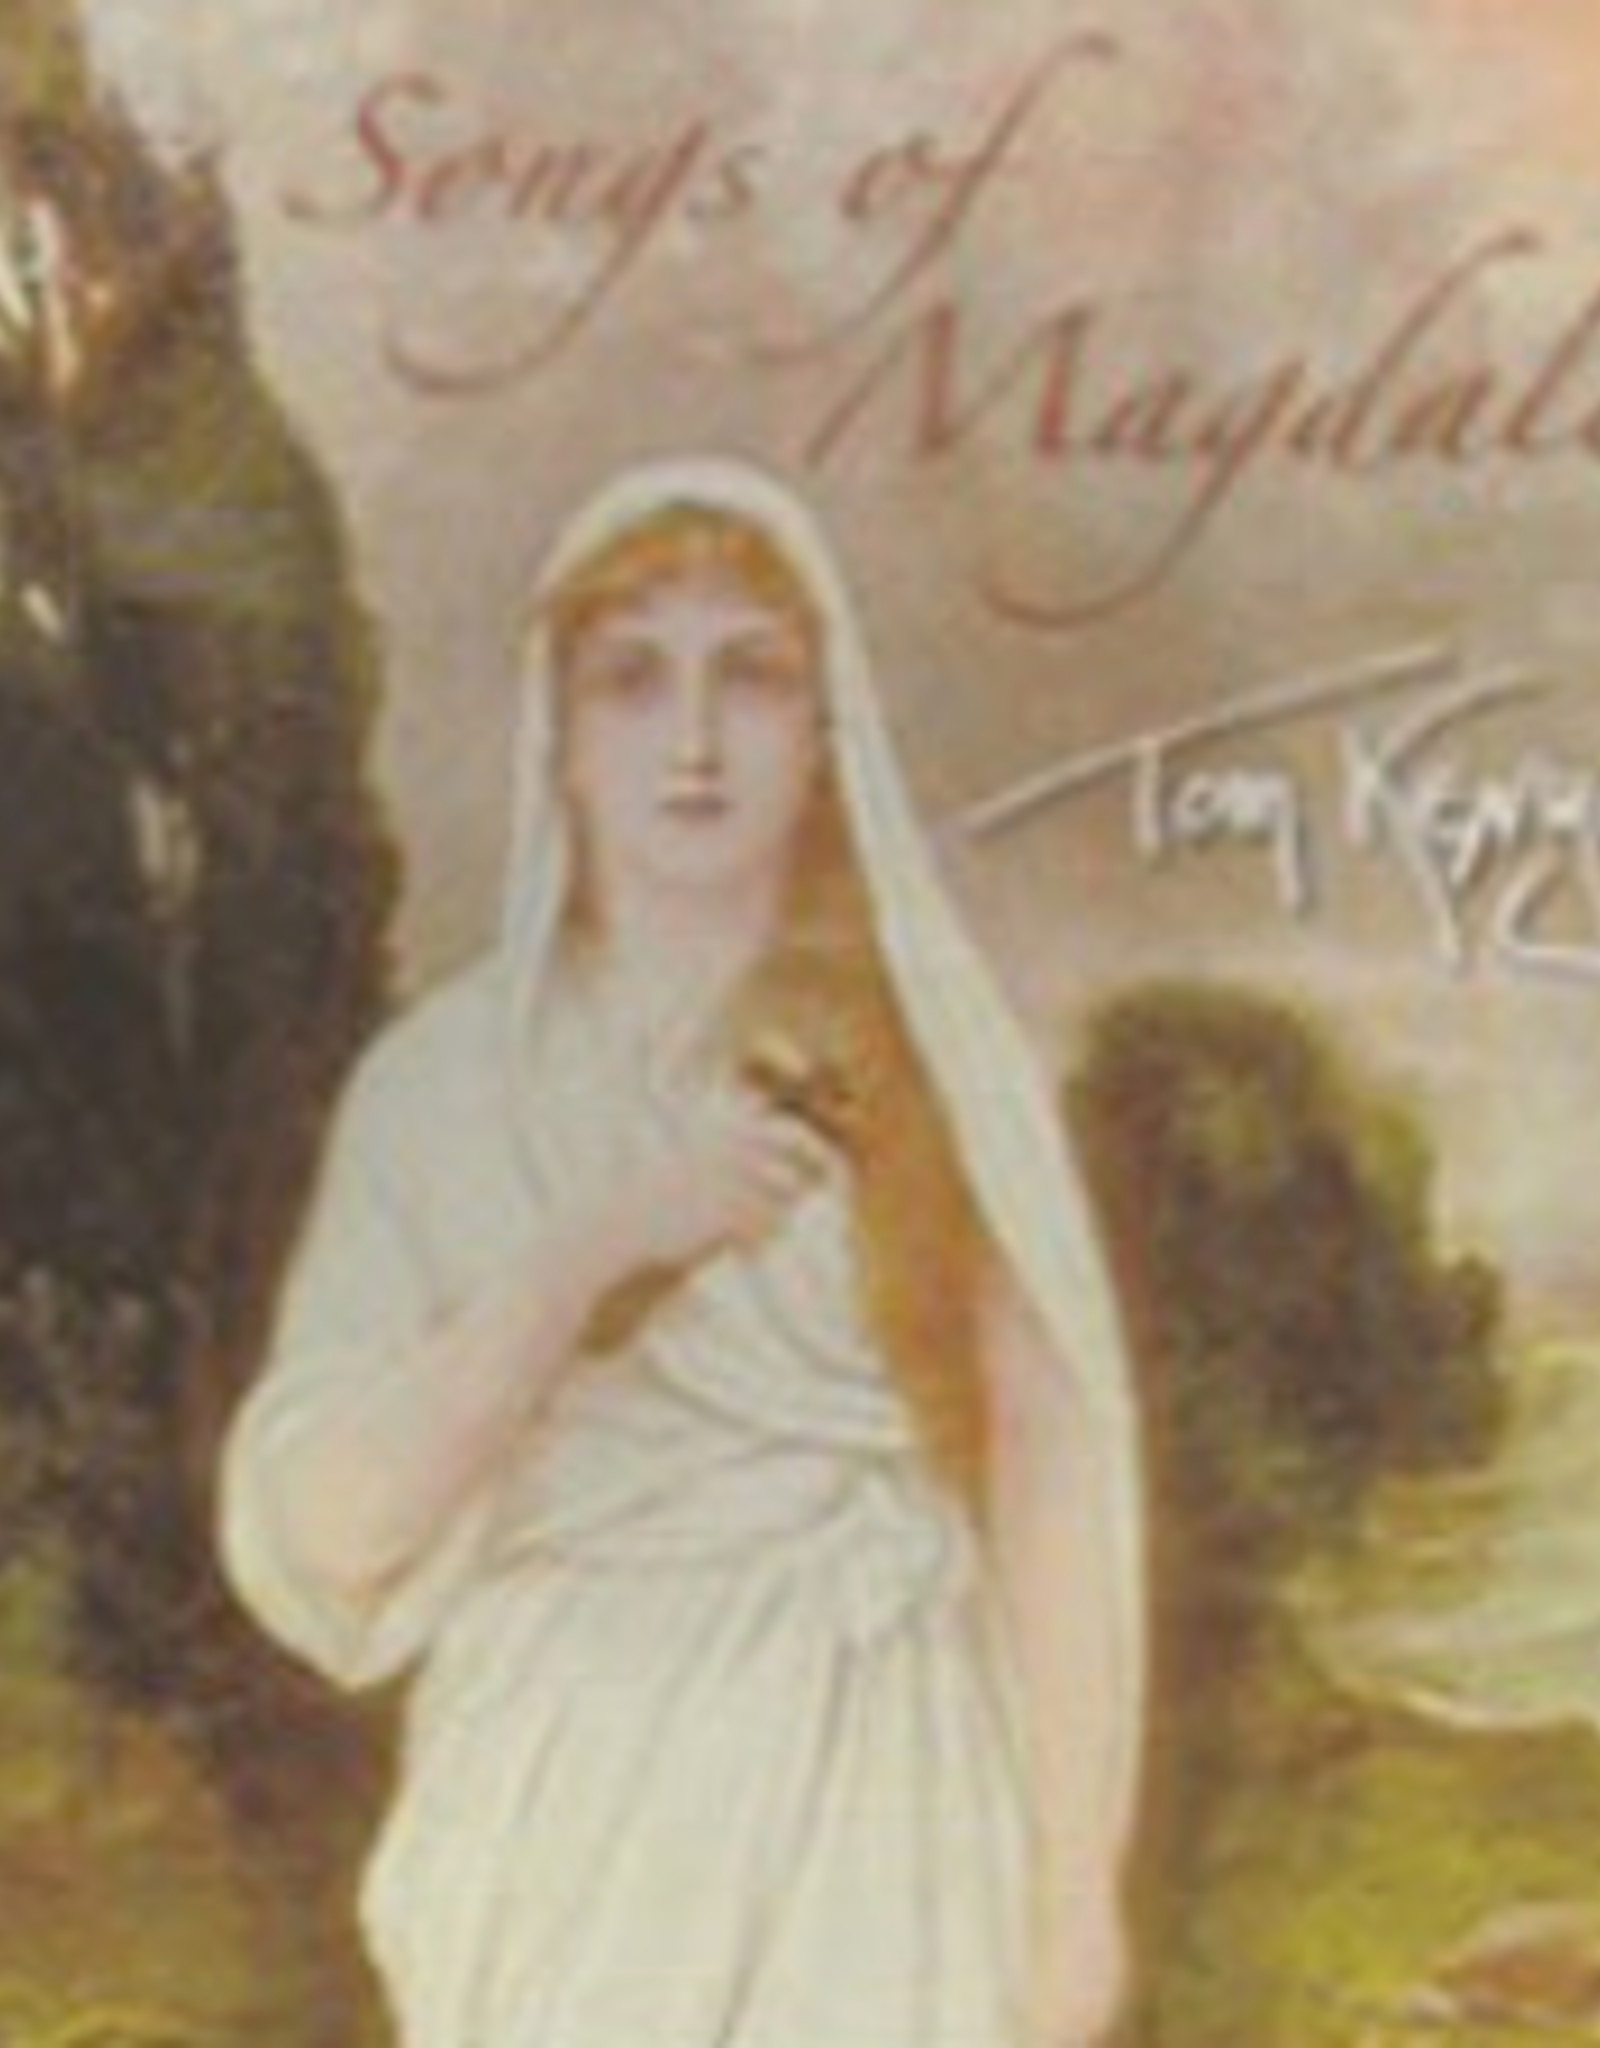 Songs of Magdalen CD